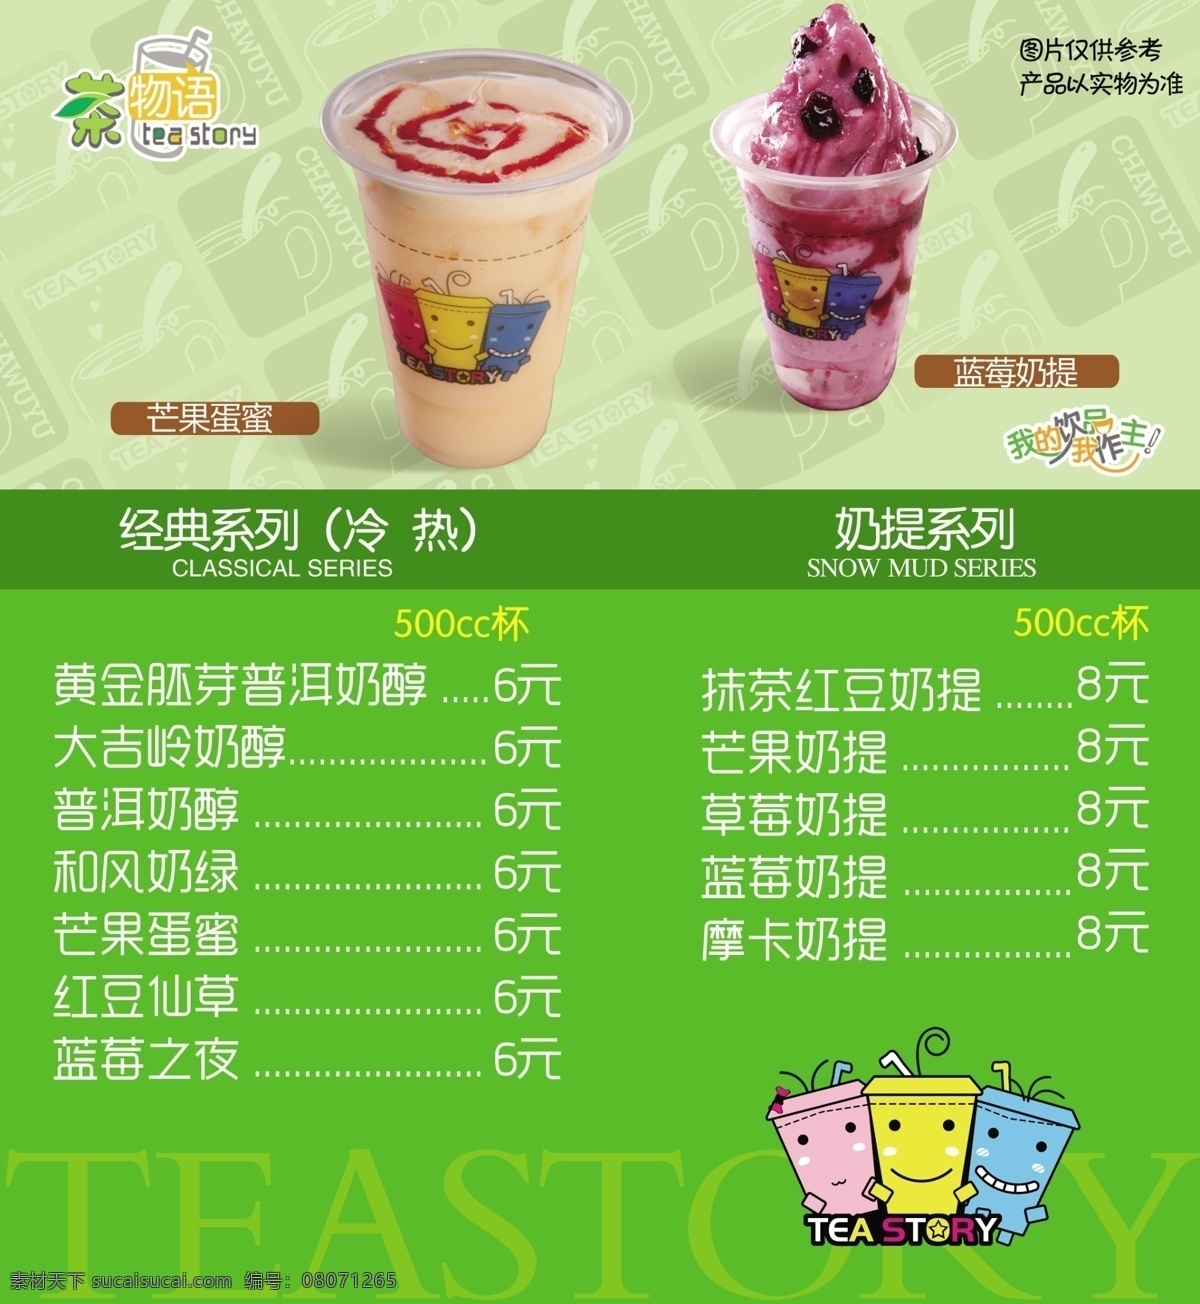 奶茶店价格表 芒果蛋蜜 蓝莓奶提 酸奶 茶 冷饮 奶茶 甜品 菜单菜谱